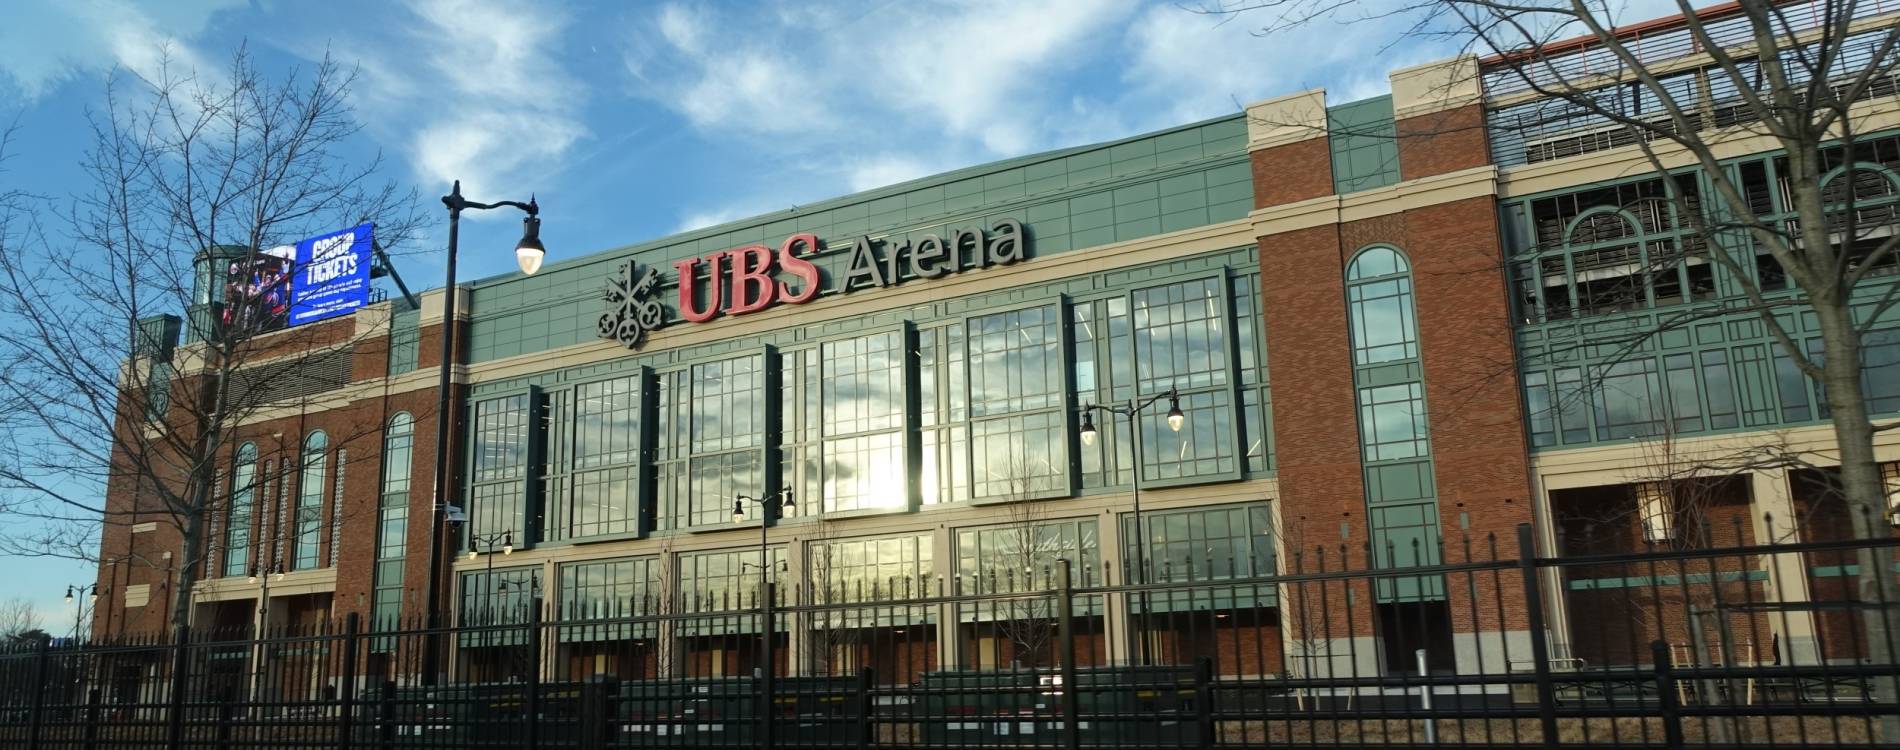 UBS Arena Events & Tickets 202425 New York Koobit